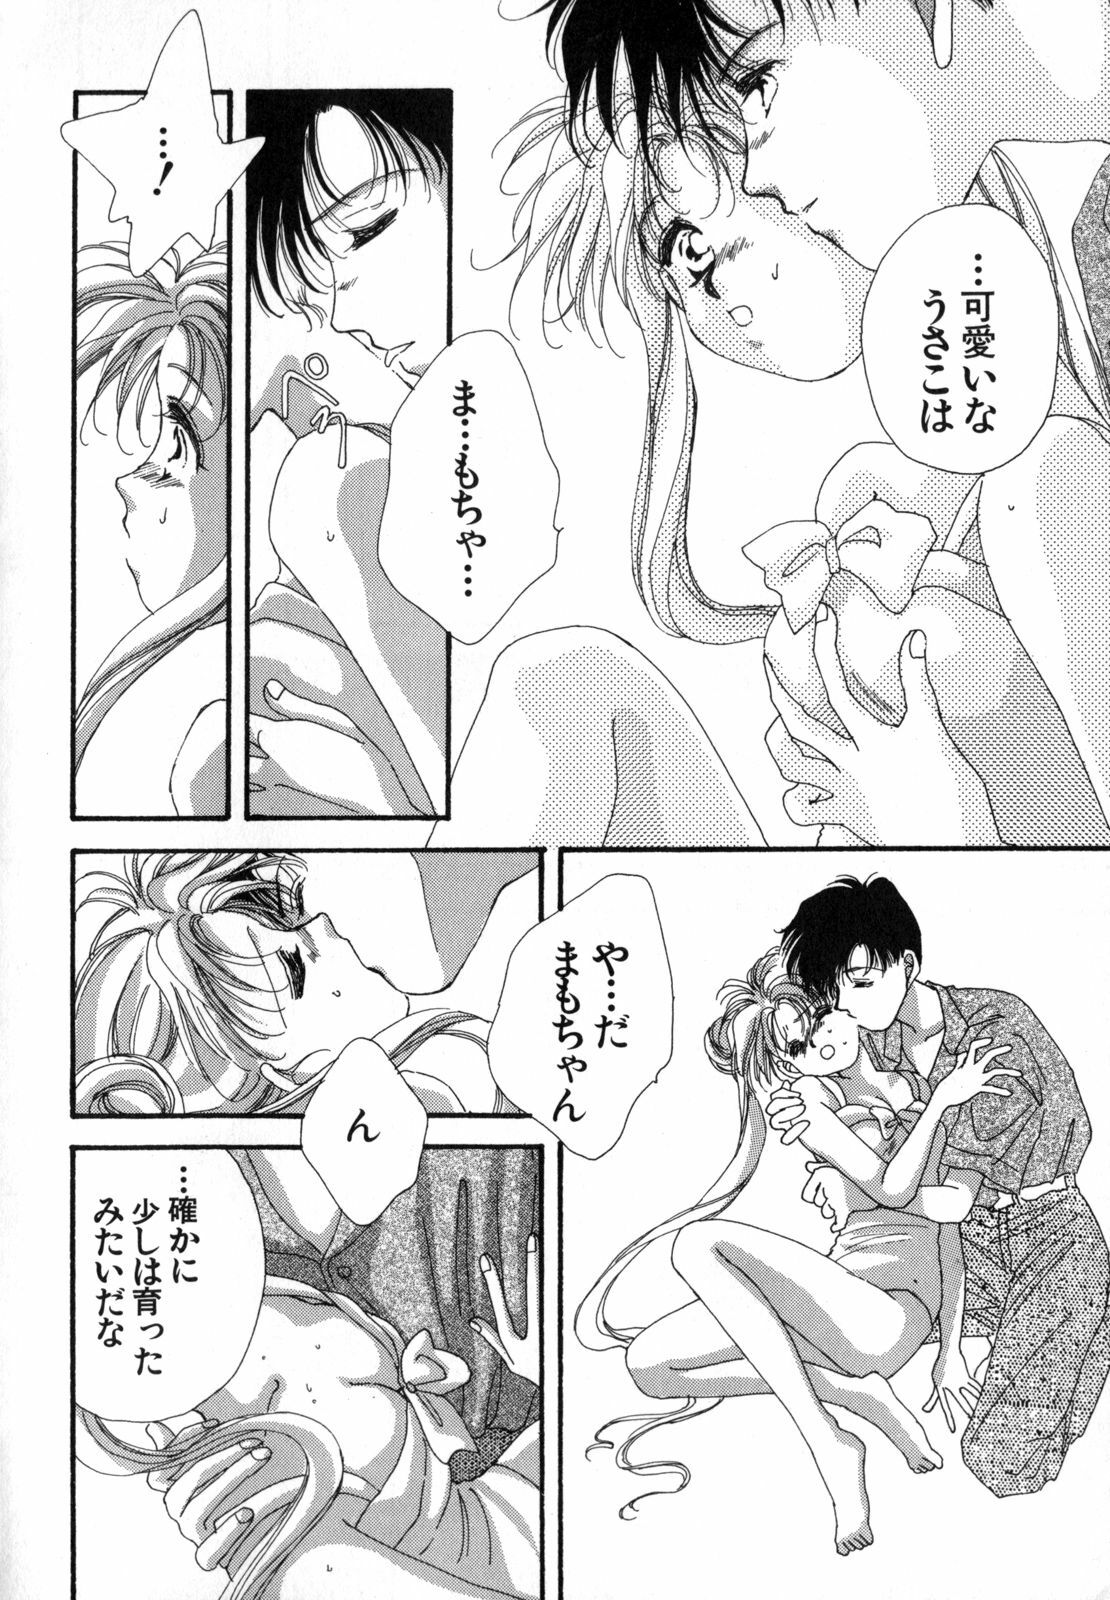 [Anthology] Lunatic Party 4 (Bishoujo Senshi Sailor Moon) page 7 full